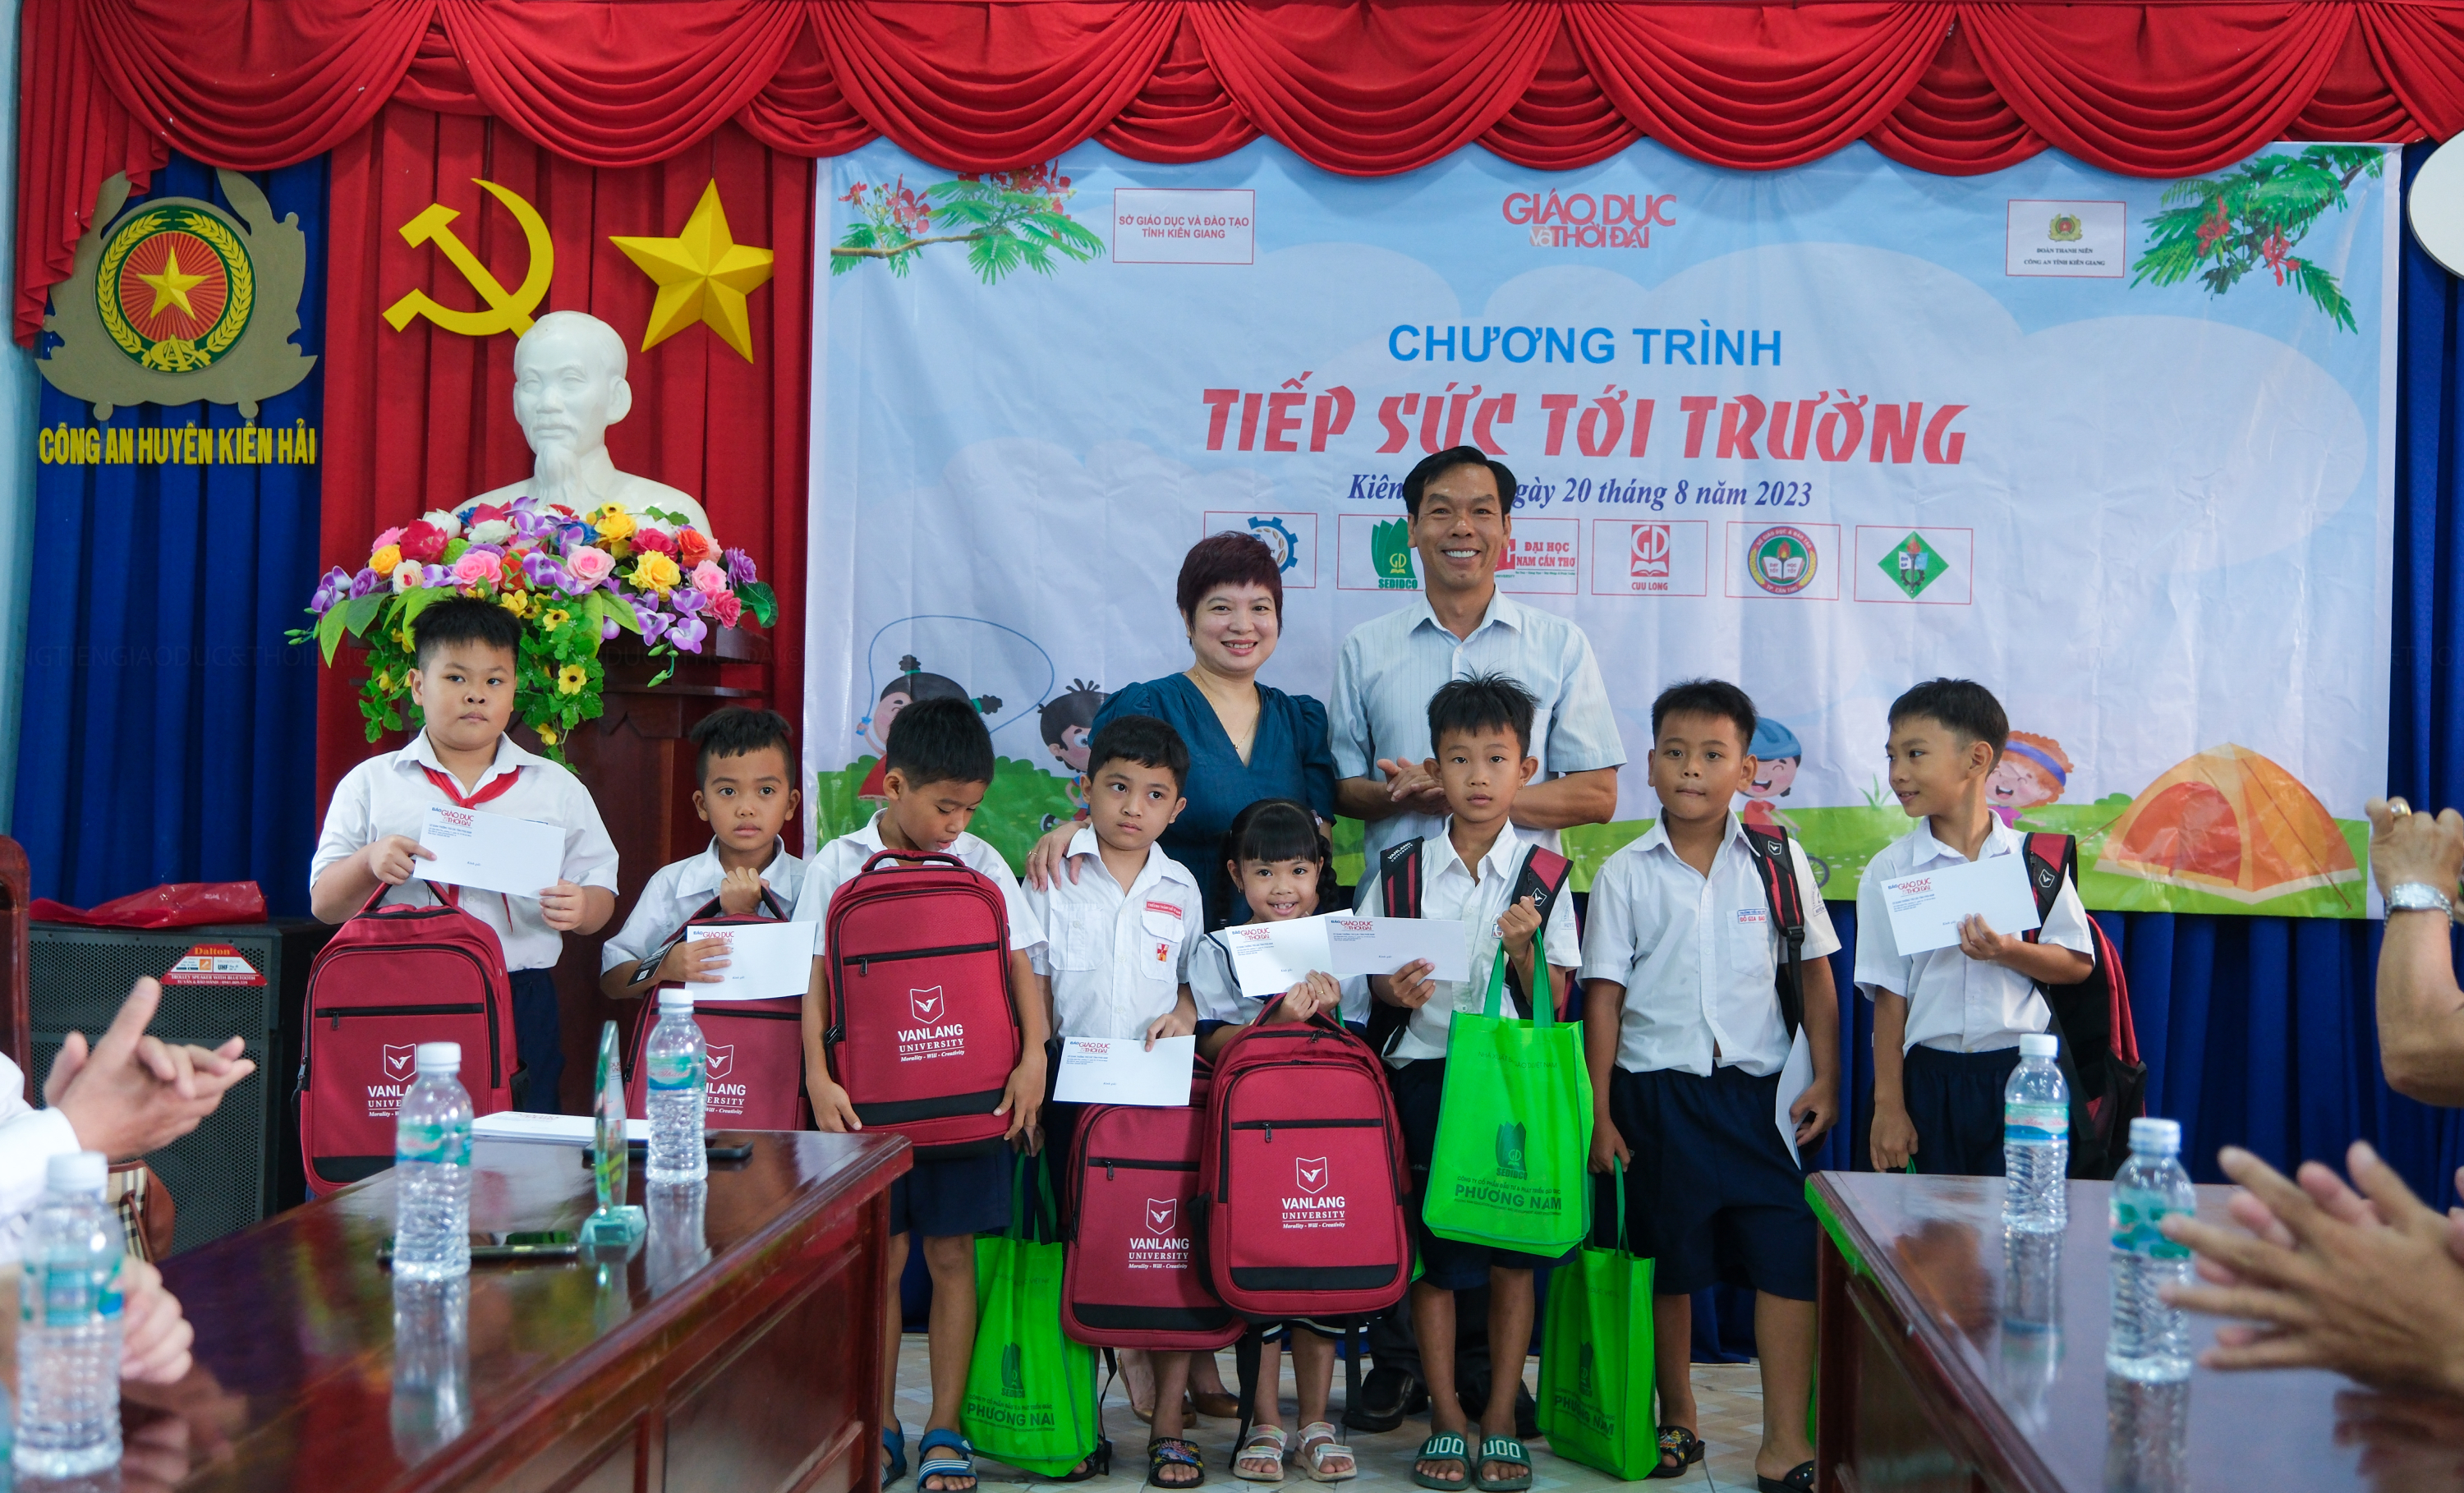 Chương trình 'Tiếp sức đến trường' đến với học sinh Kiên Giang ảnh 9